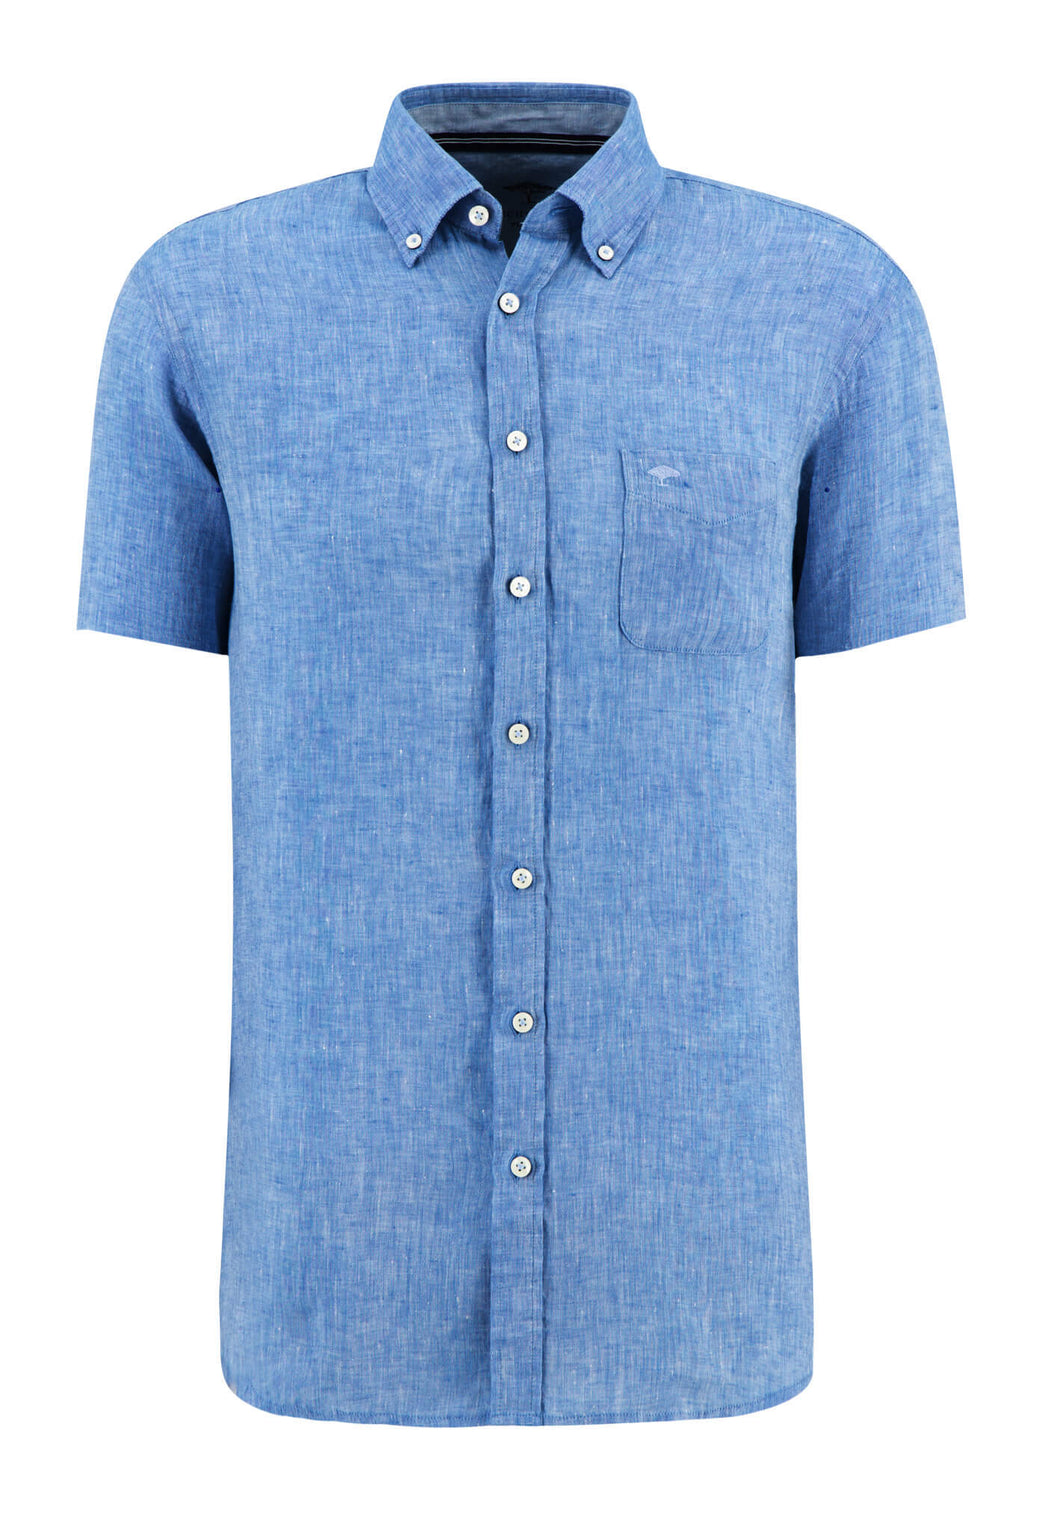 New Fynch Hatton Ocean Blue Linen Short Sleeve Shirt